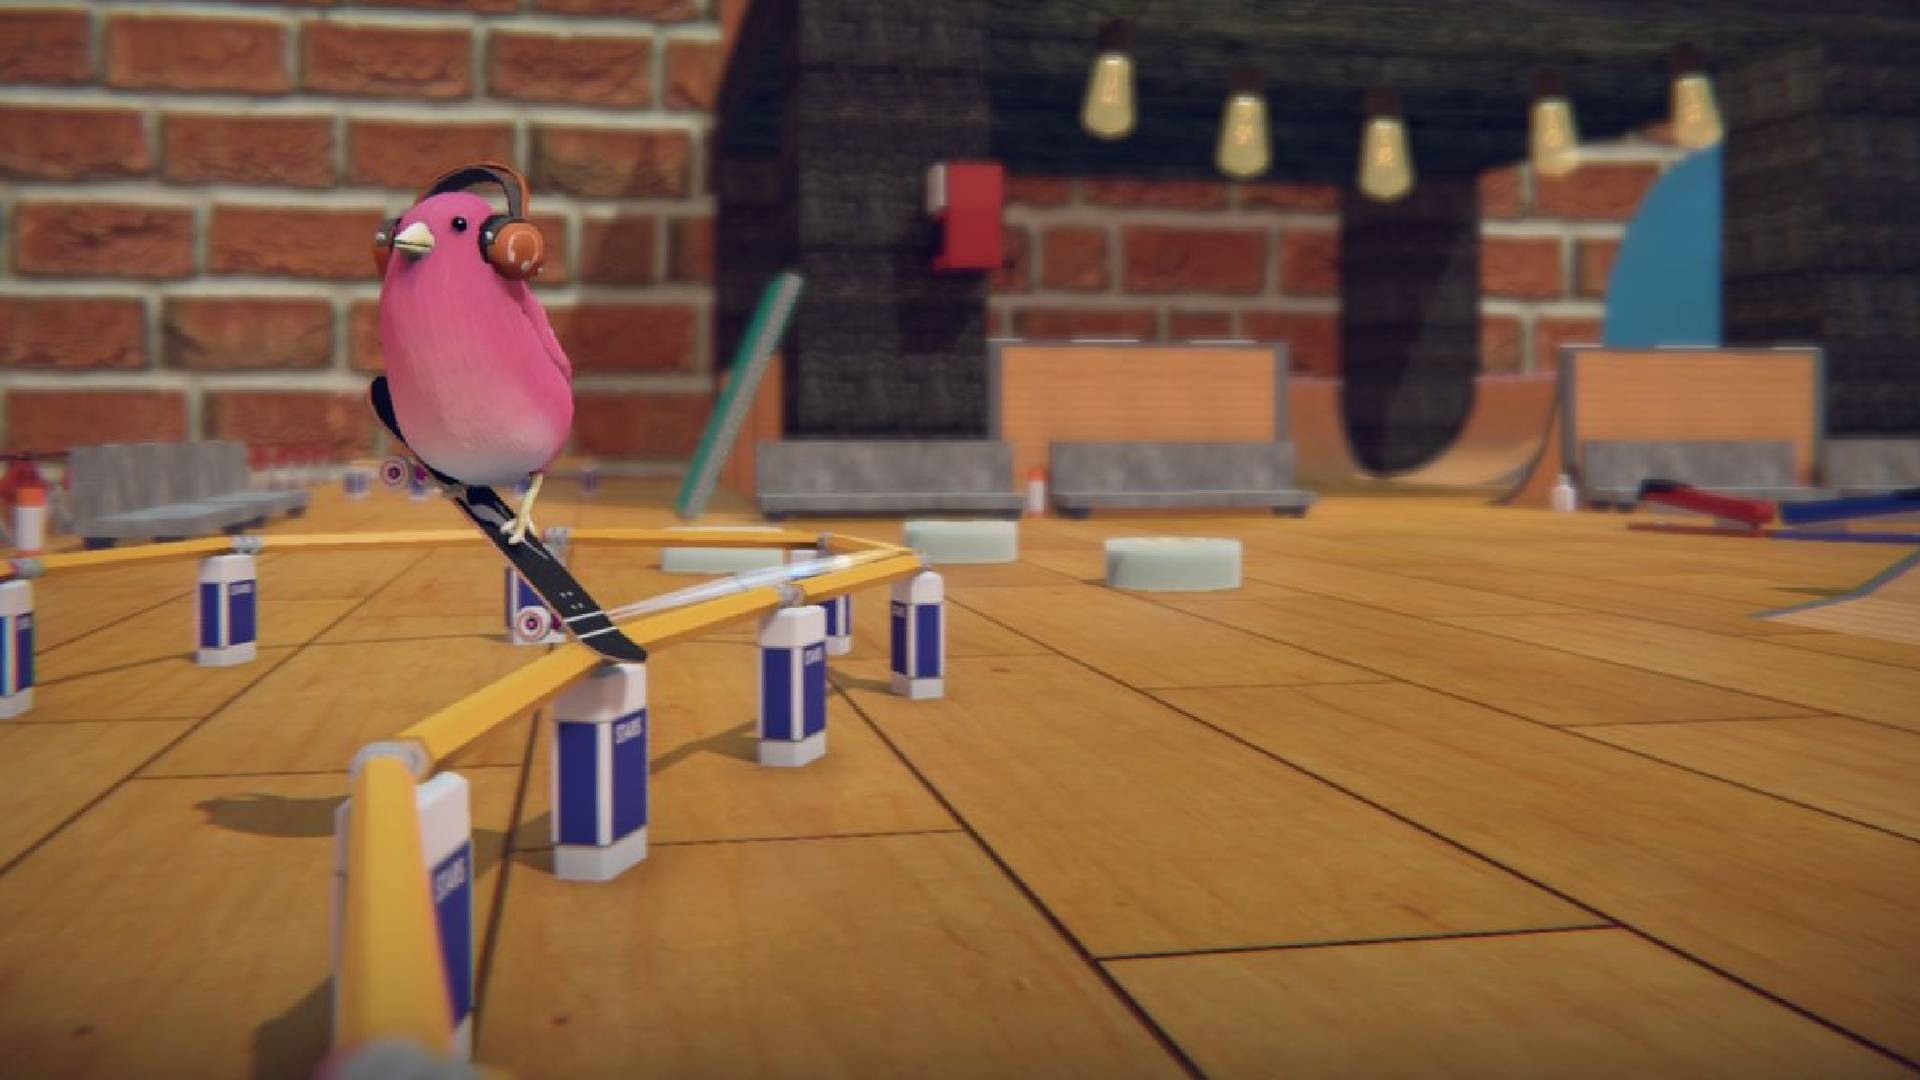 Best skateboarding games: a bird rides on a skateboard